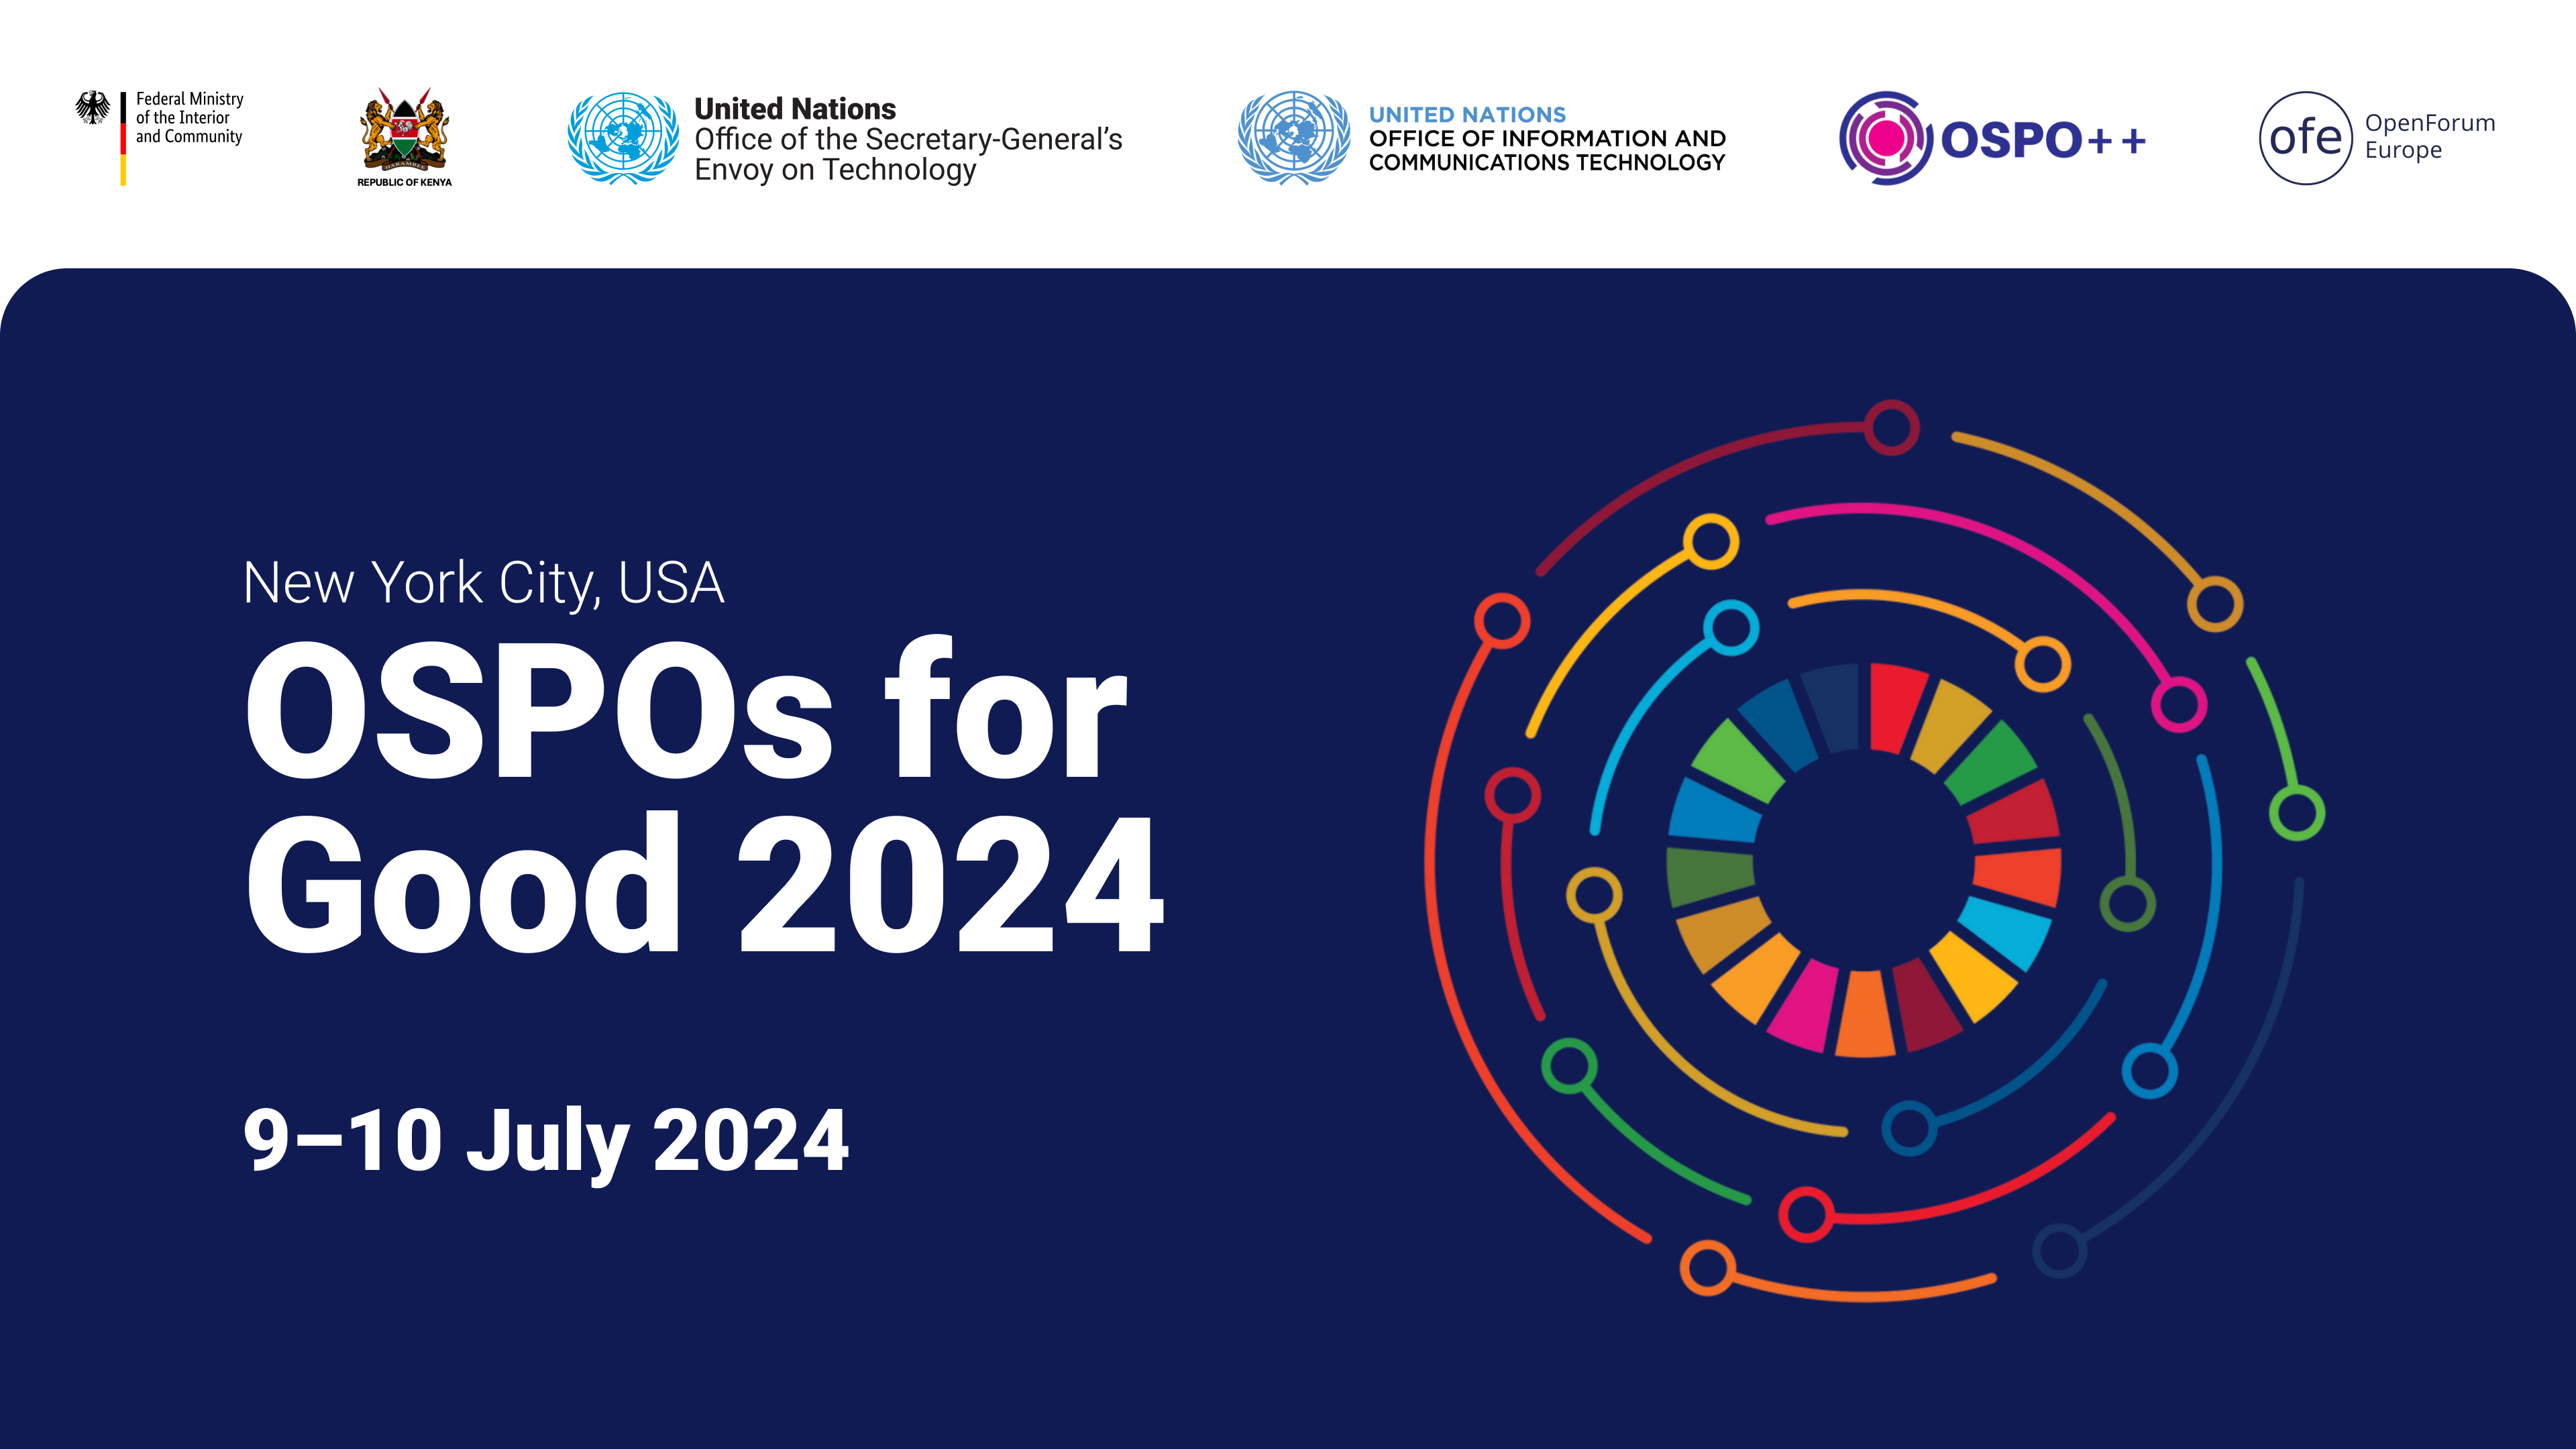 Απολογισμός του συνεδρίου OSPOs for Good: Προώθηση της αειφόρου ανάπτυξης μέσω του ανοιχτού κώδικα